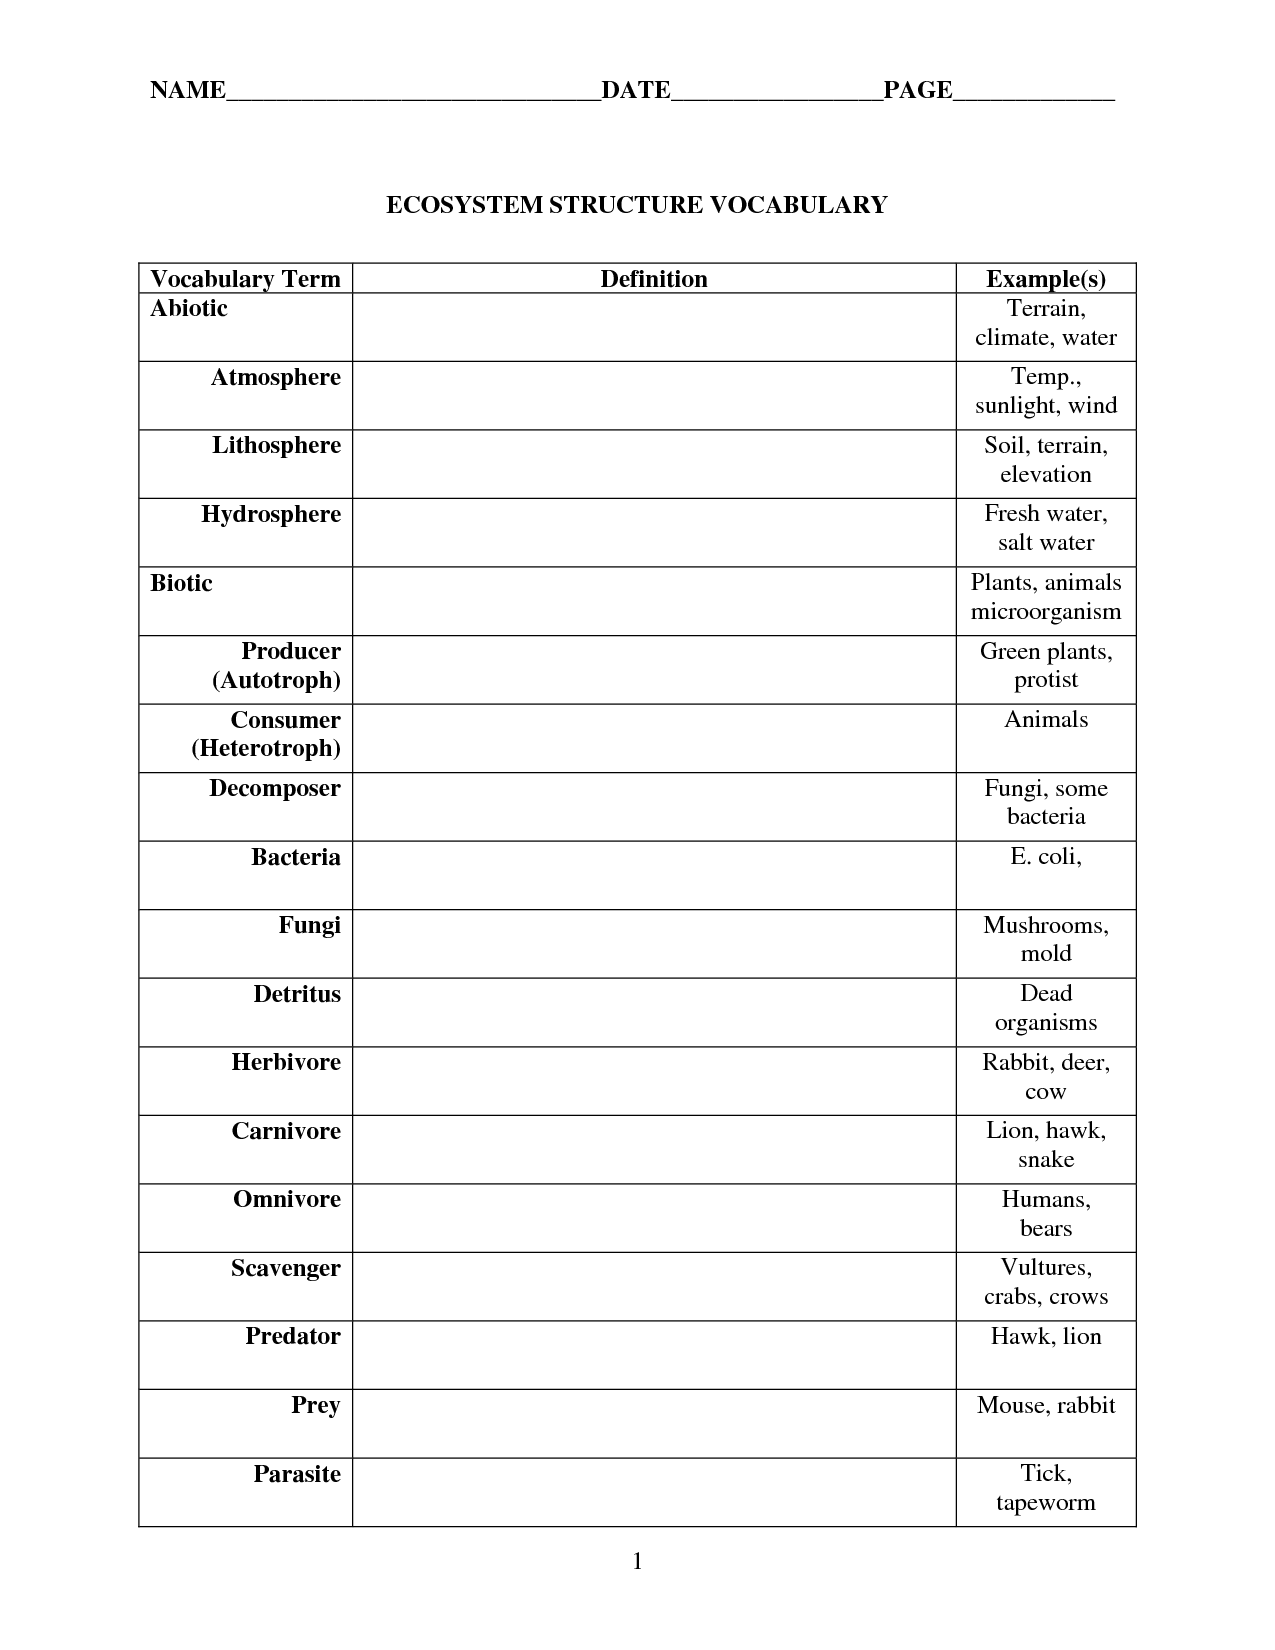 Ecosystem Vocabulary Worksheets Image